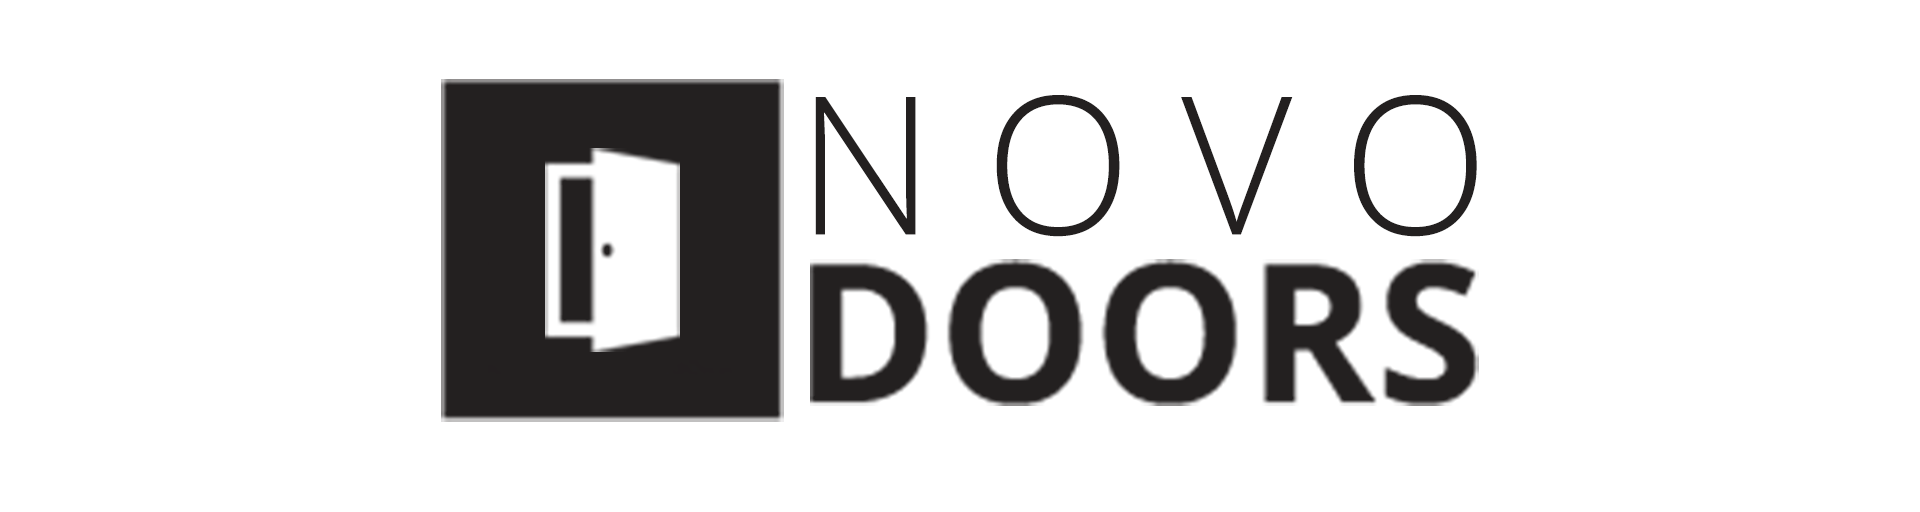 NOVO DOORS